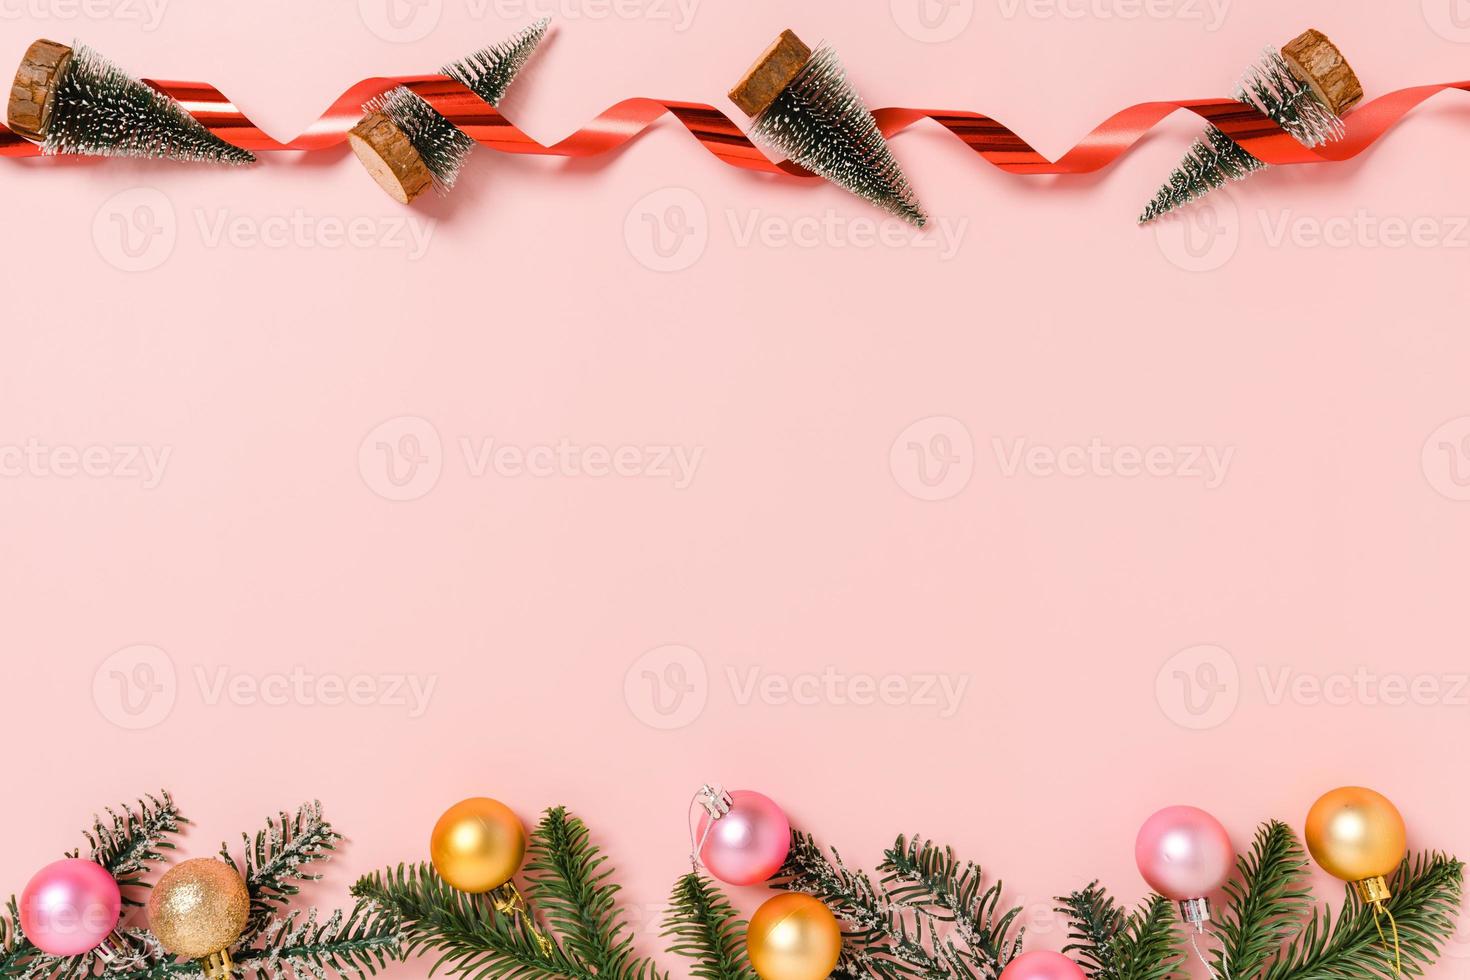 minimale creatieve platte lay van traditionele kerstcompositie en nieuwjaarsvakantieseizoen. bovenaanzicht winter kerstversiering op roze achtergrond met lege ruimte voor tekst. kopieer ruimtefotografie. foto